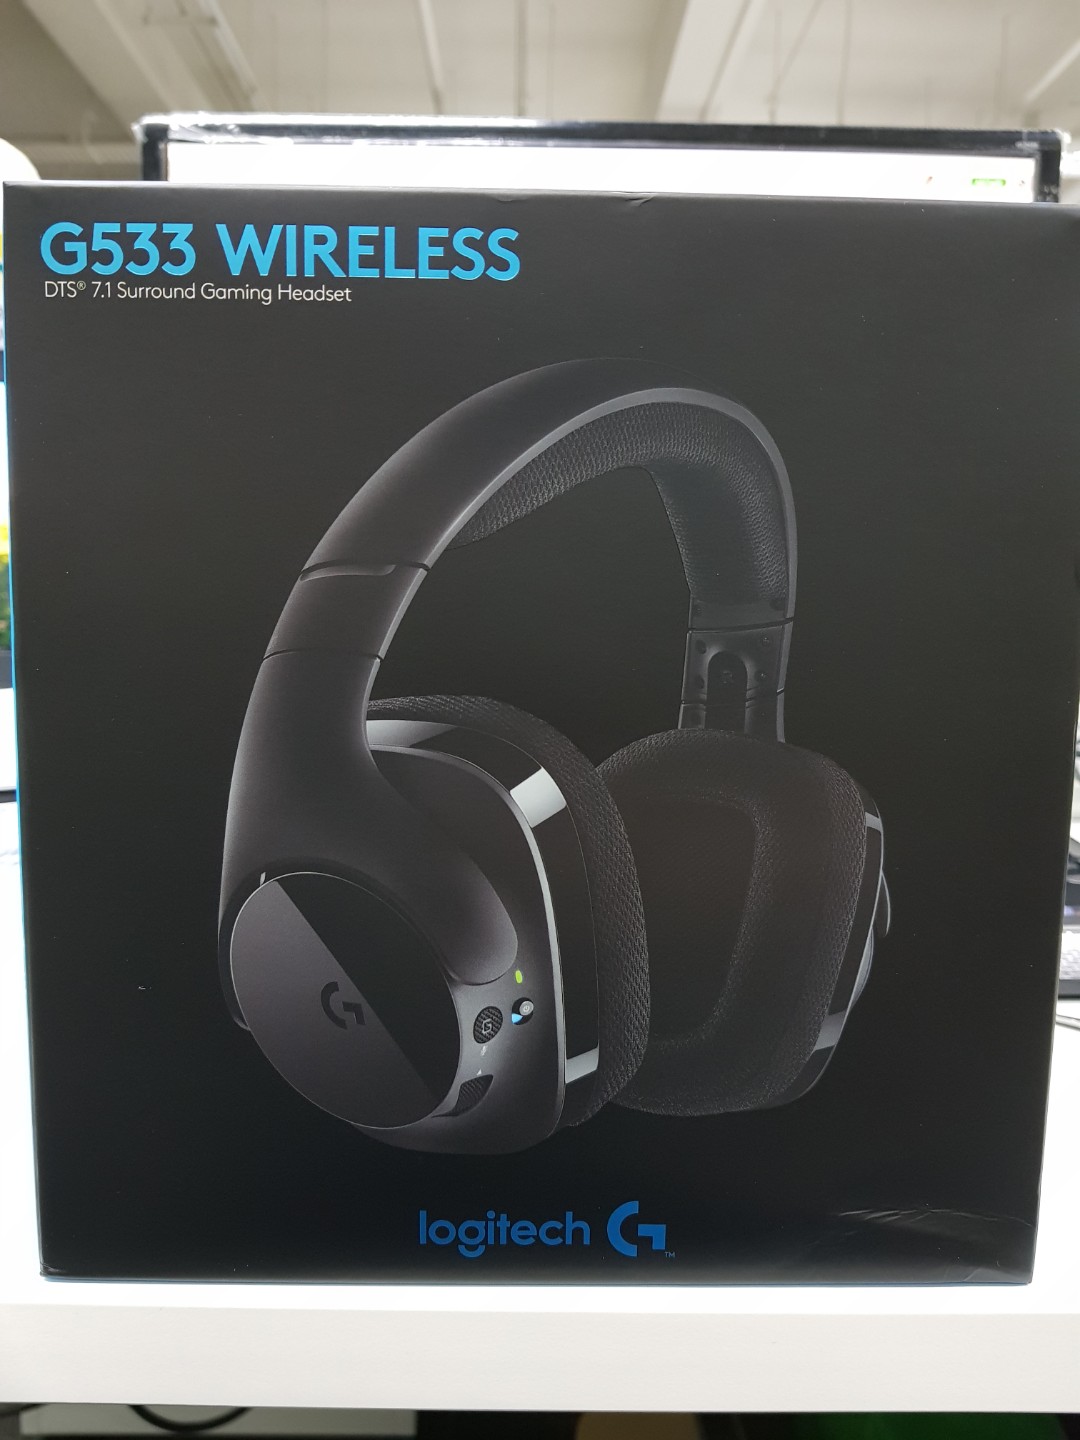 logitech g533 wireless 7.1